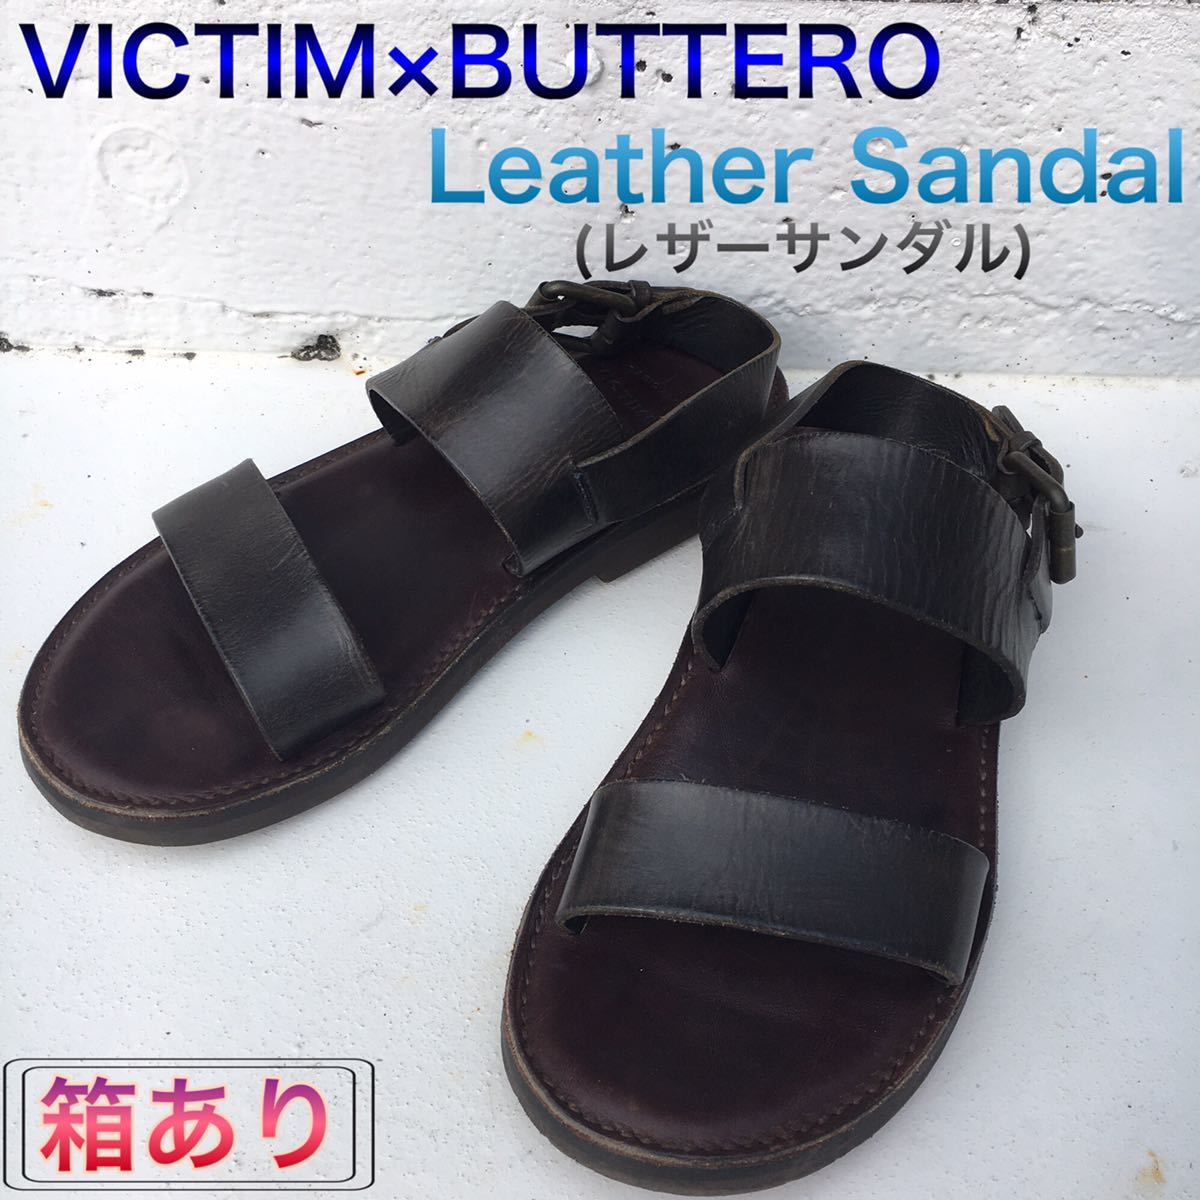 送料無料】 VICTIM×BUTTERO leather sandal レザーサンダル